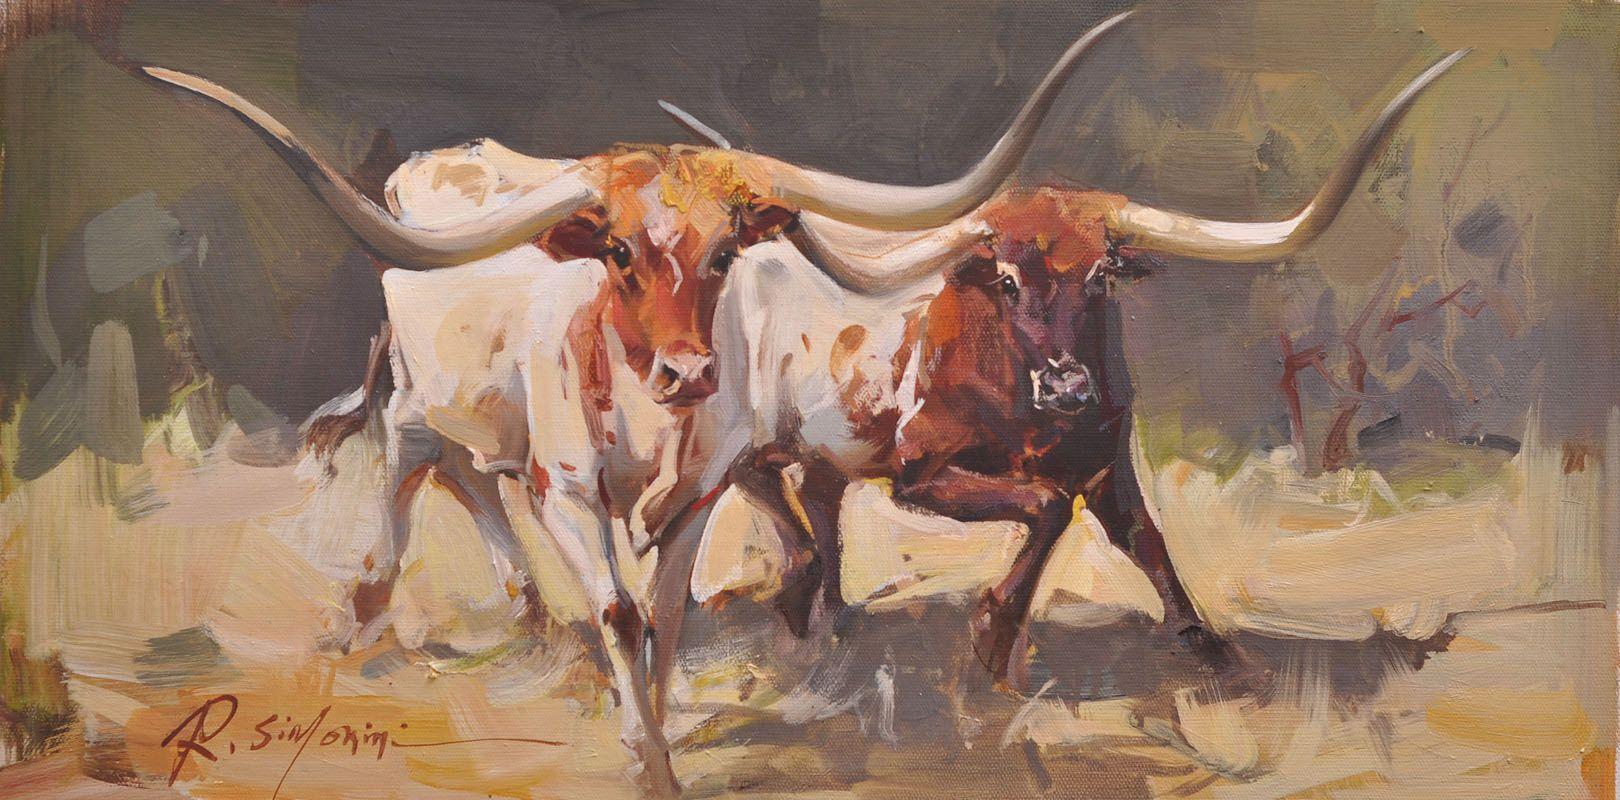 Dieses Gemälde des Künstlers Ray SIMONINI mit dem Titel "Long Horn" ist ein 12x24 Ölgemälde auf Leinwand, das ein Porträt eines weißen und braunen Longhorns zeigt, das in einem Feld läuft.

Über den Künstler:
SIMONINI wurde 1981 in China geboren. Er